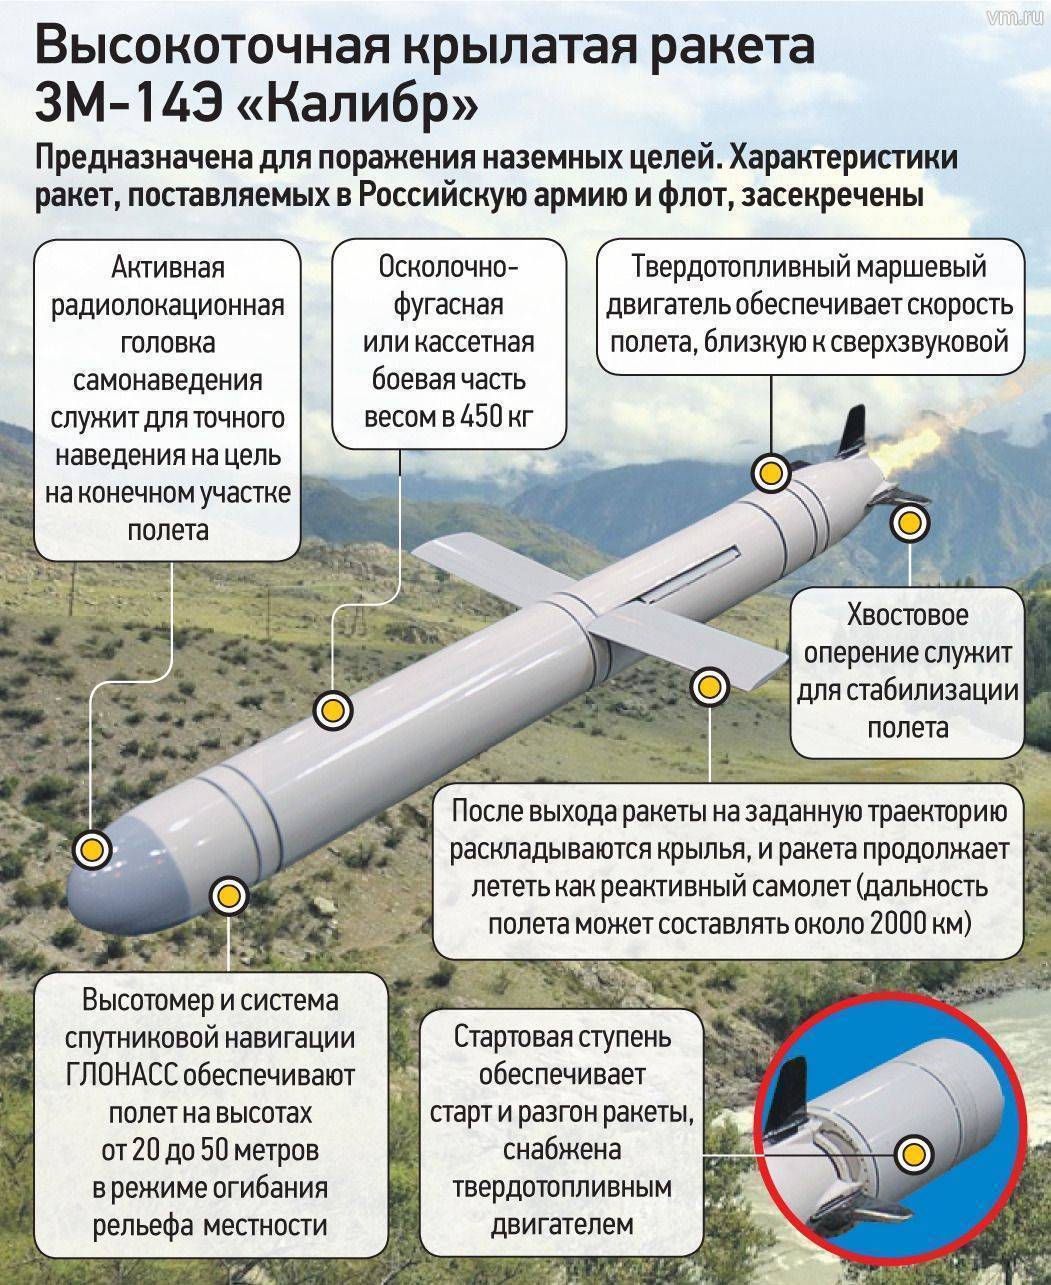 Ракетный комплекс «калибр-нк» — основные ттх и история создания - big-army.ru